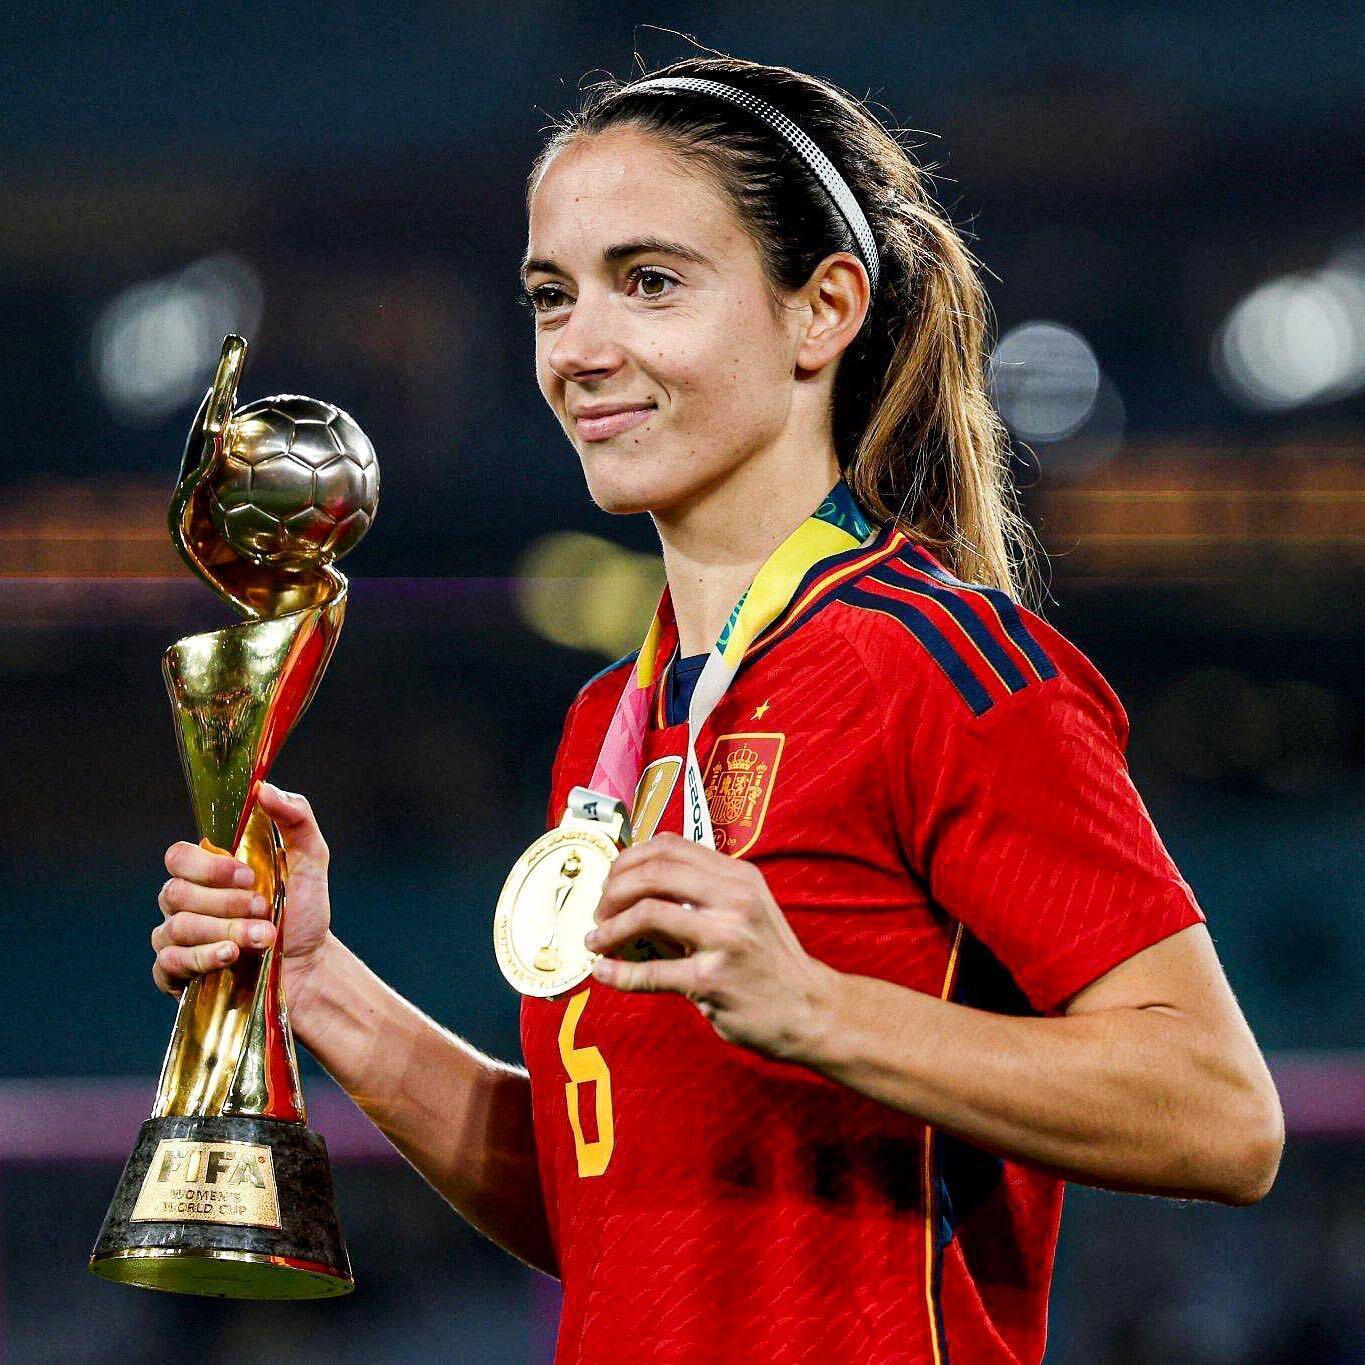 "Золотой мяч" получила чемпионка мира из Испании. Как выглядит красавица, ставшая в один ряд с Месси